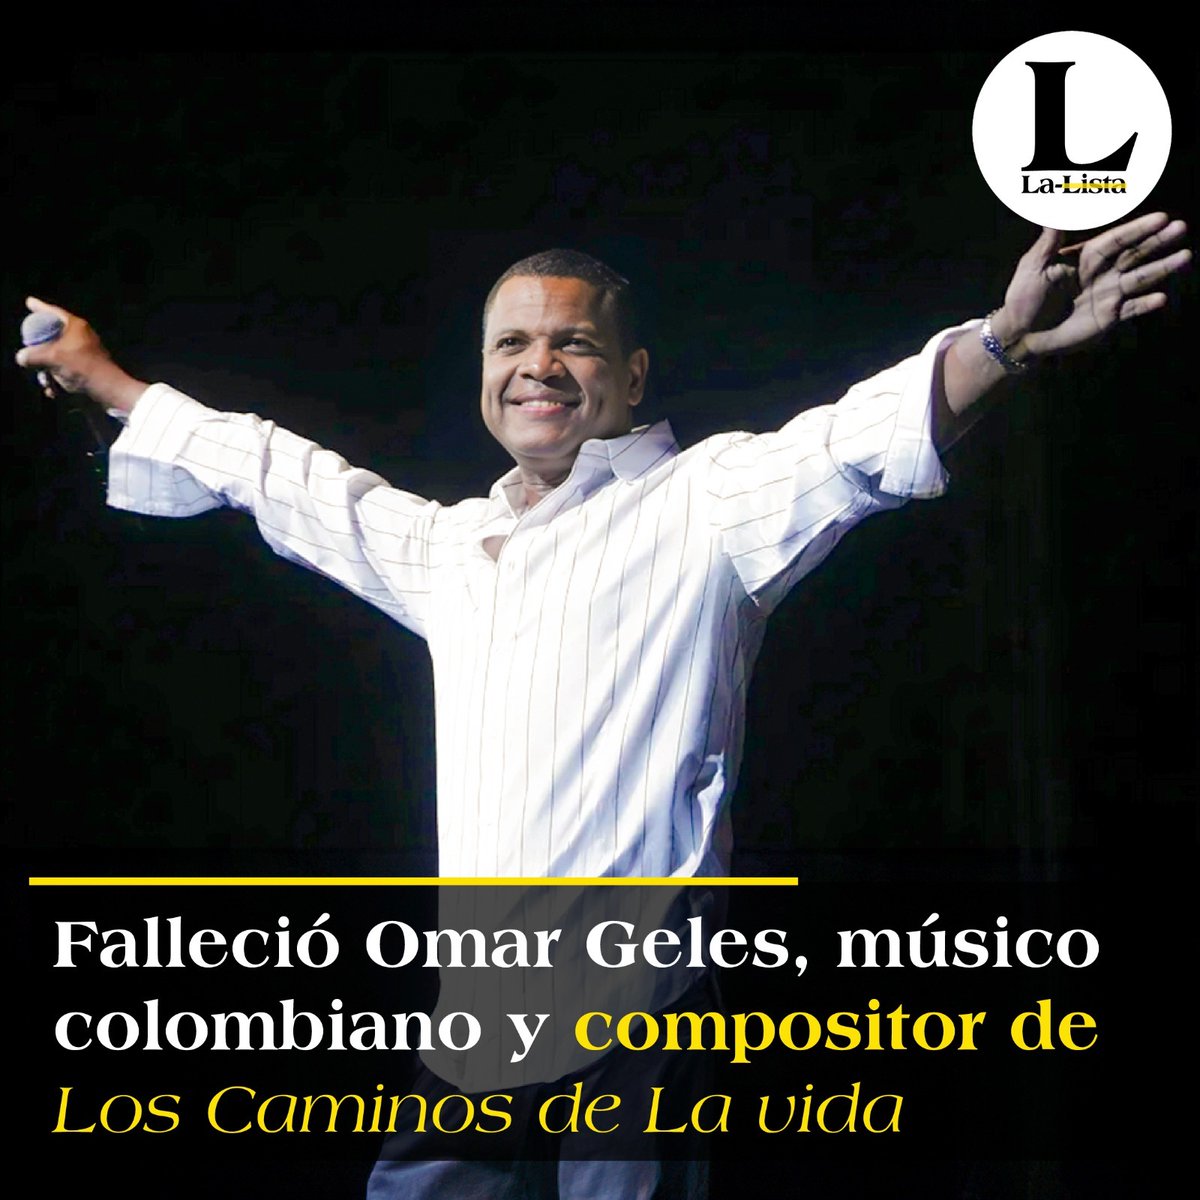 Murió a los 57 años el músico colombiano Omar Geles, compositor de la canción 'Los caminos de la vida'. 📌t.ly/vsdlr